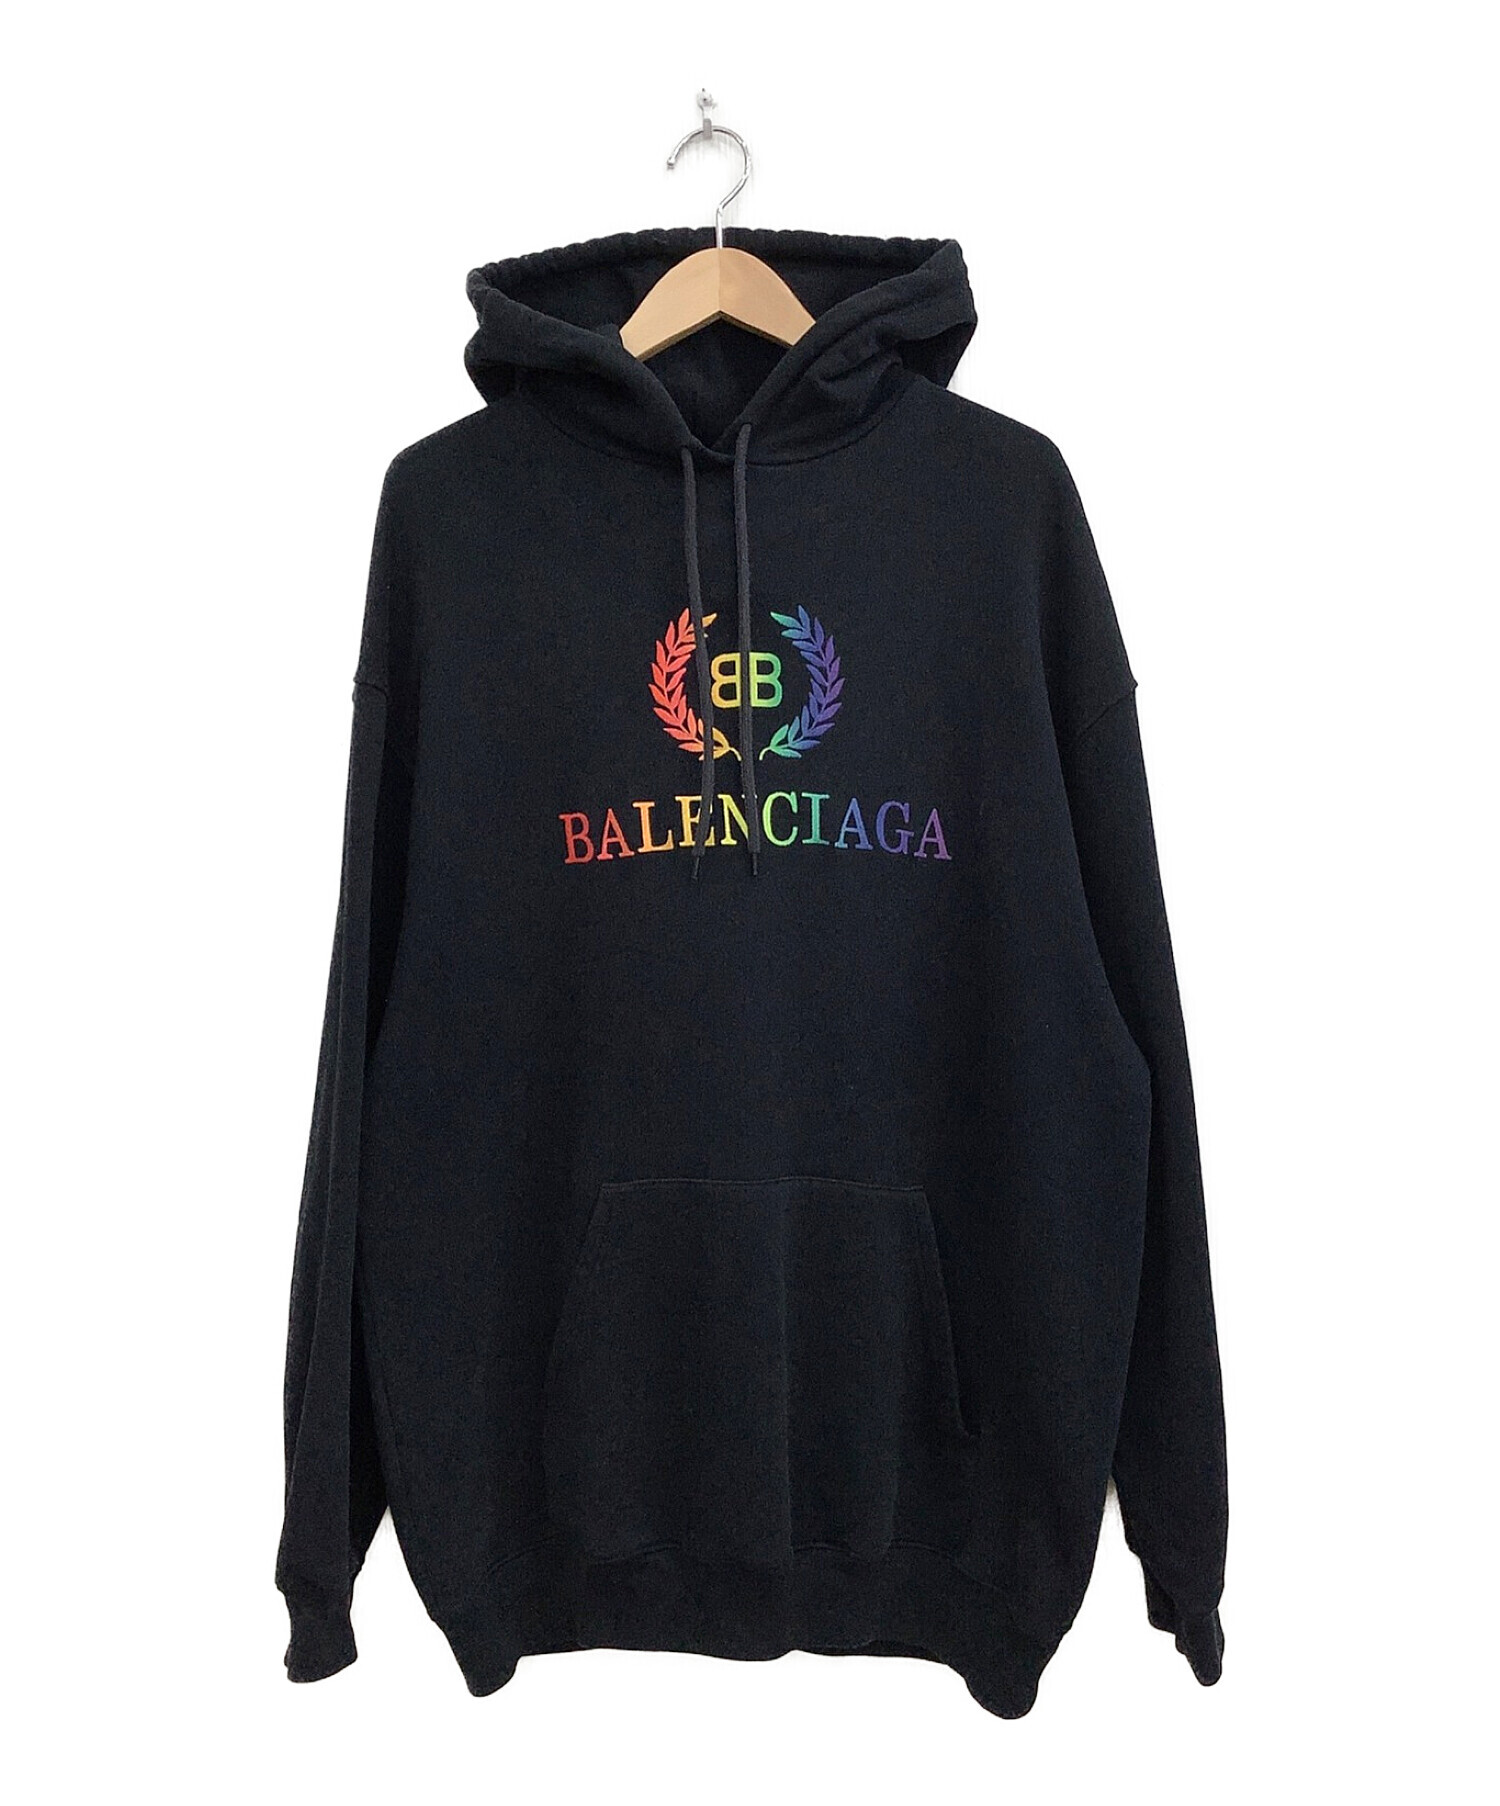 人気人気SALE Balenciaga バレンシアガ BBレインボーパーカーの通販 by s shop｜バレンシアガならラクマ 